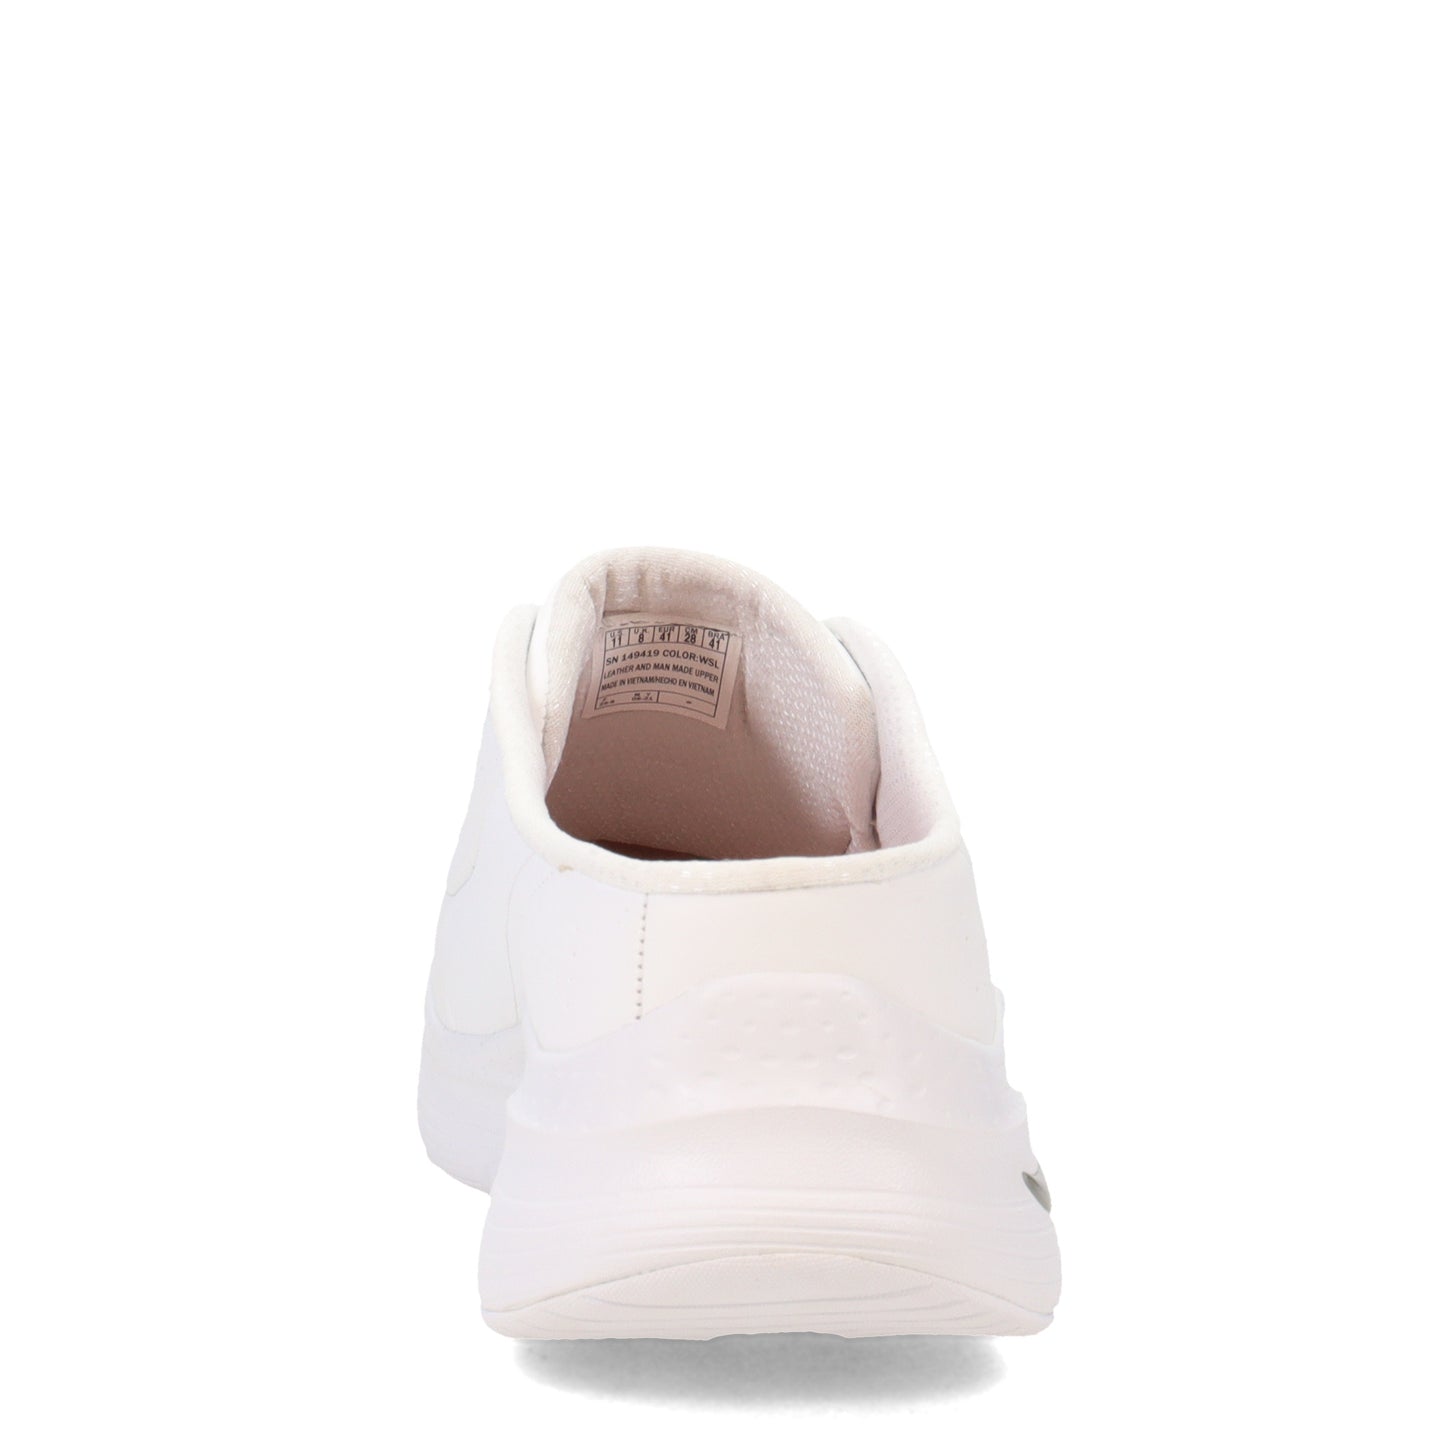 Peltz Shoes  Women's Skechers Arch Fit - Blessful Me Slip-On Sneaker WHITE SILVER 149419-WSL